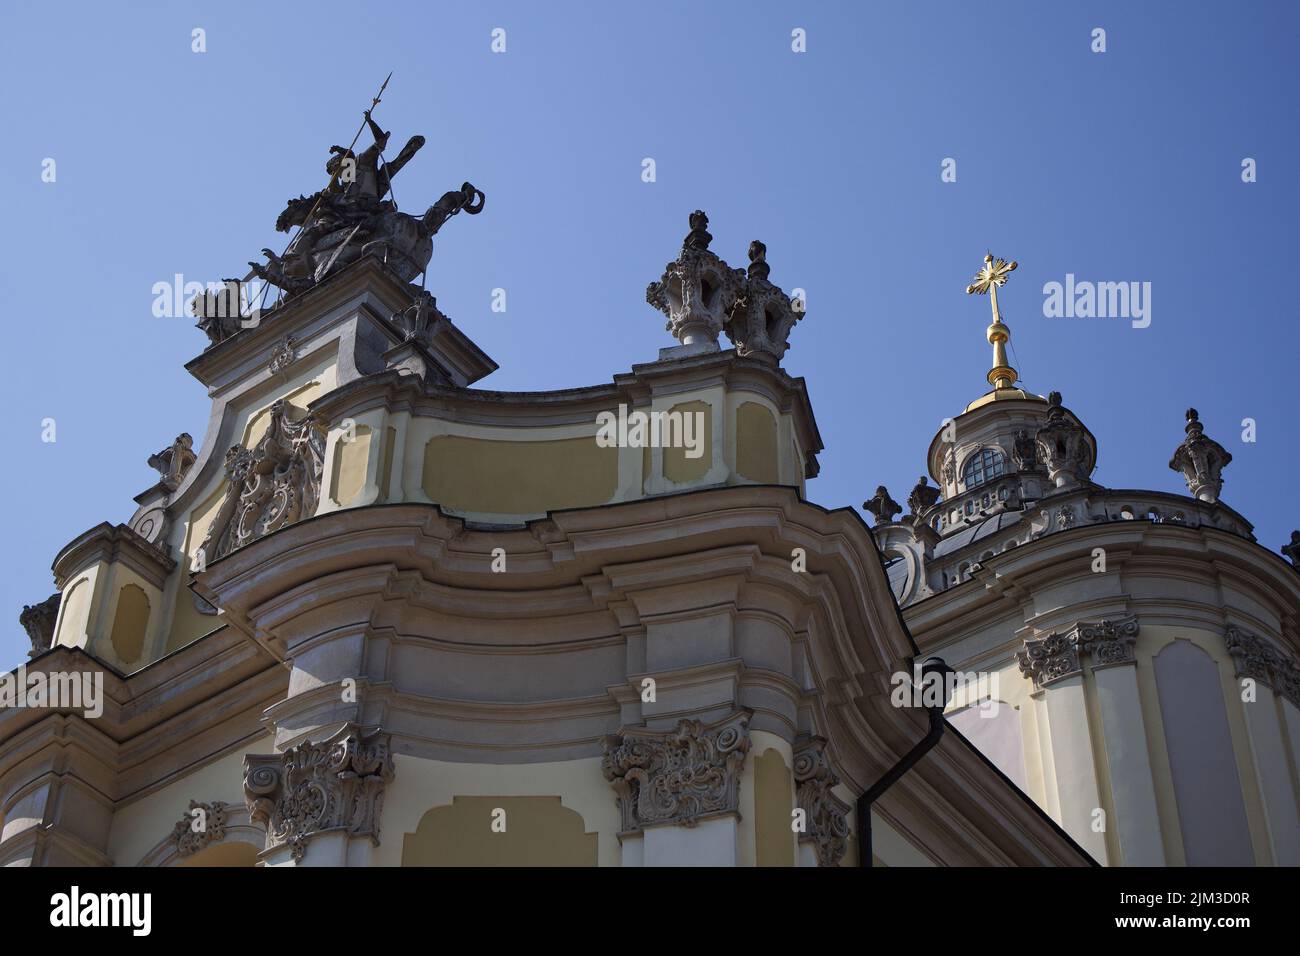 Die St.-Georgs-Kathedrale ist eine barocke Rokoko-Kathedrale in der Stadt Lviv, der historischen Hauptstadt der Westukraine. Schöne christliche Kirche. Stockfoto